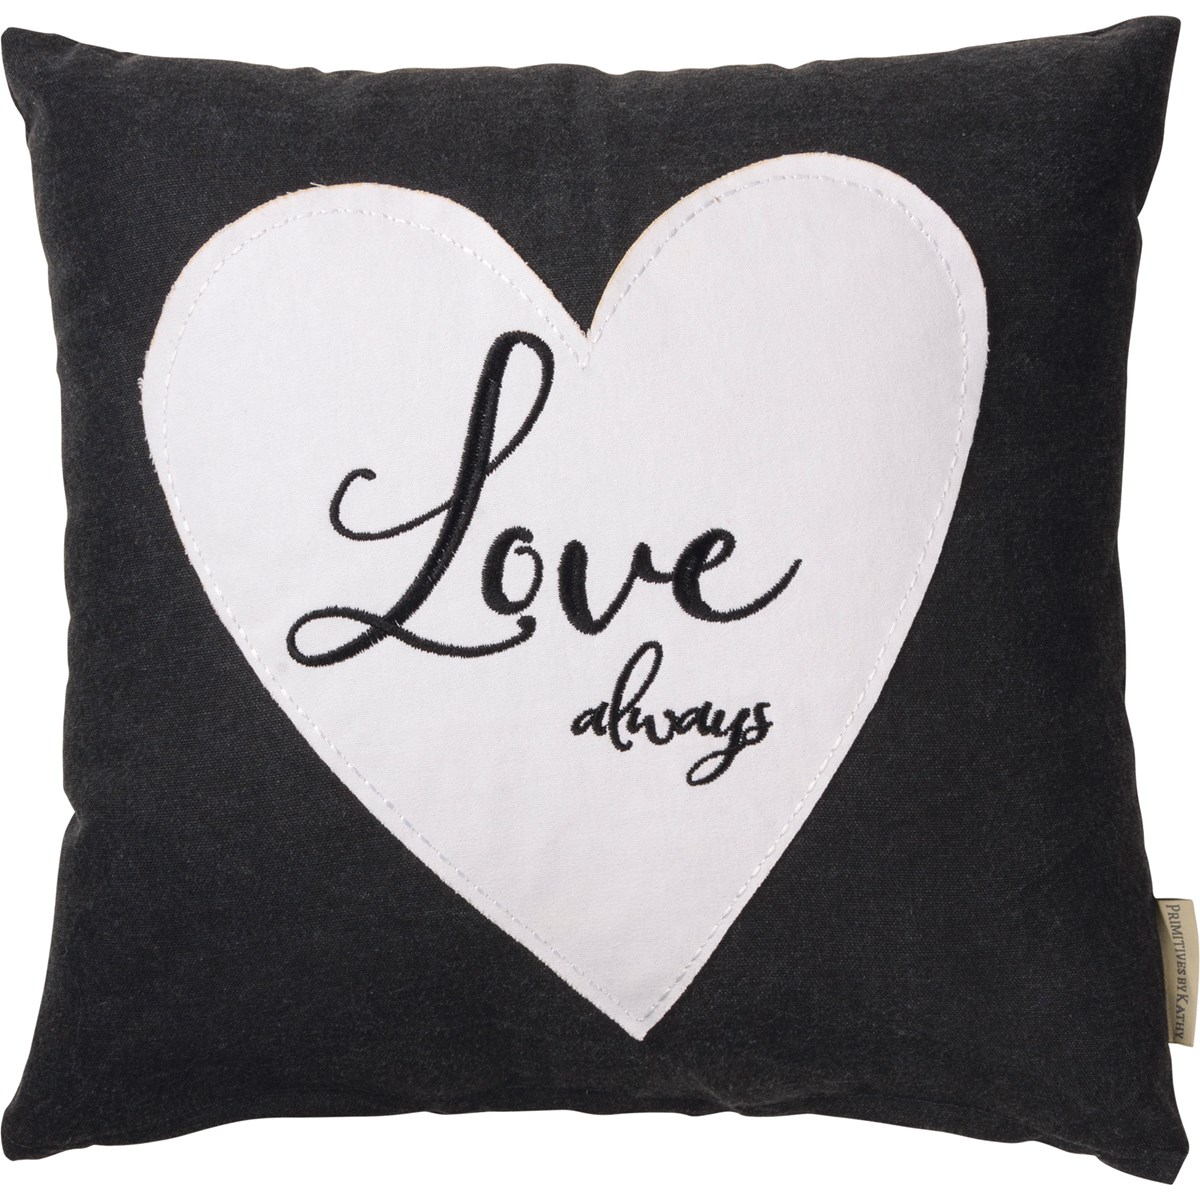 Love Always Pillow - Cotton, Zipper